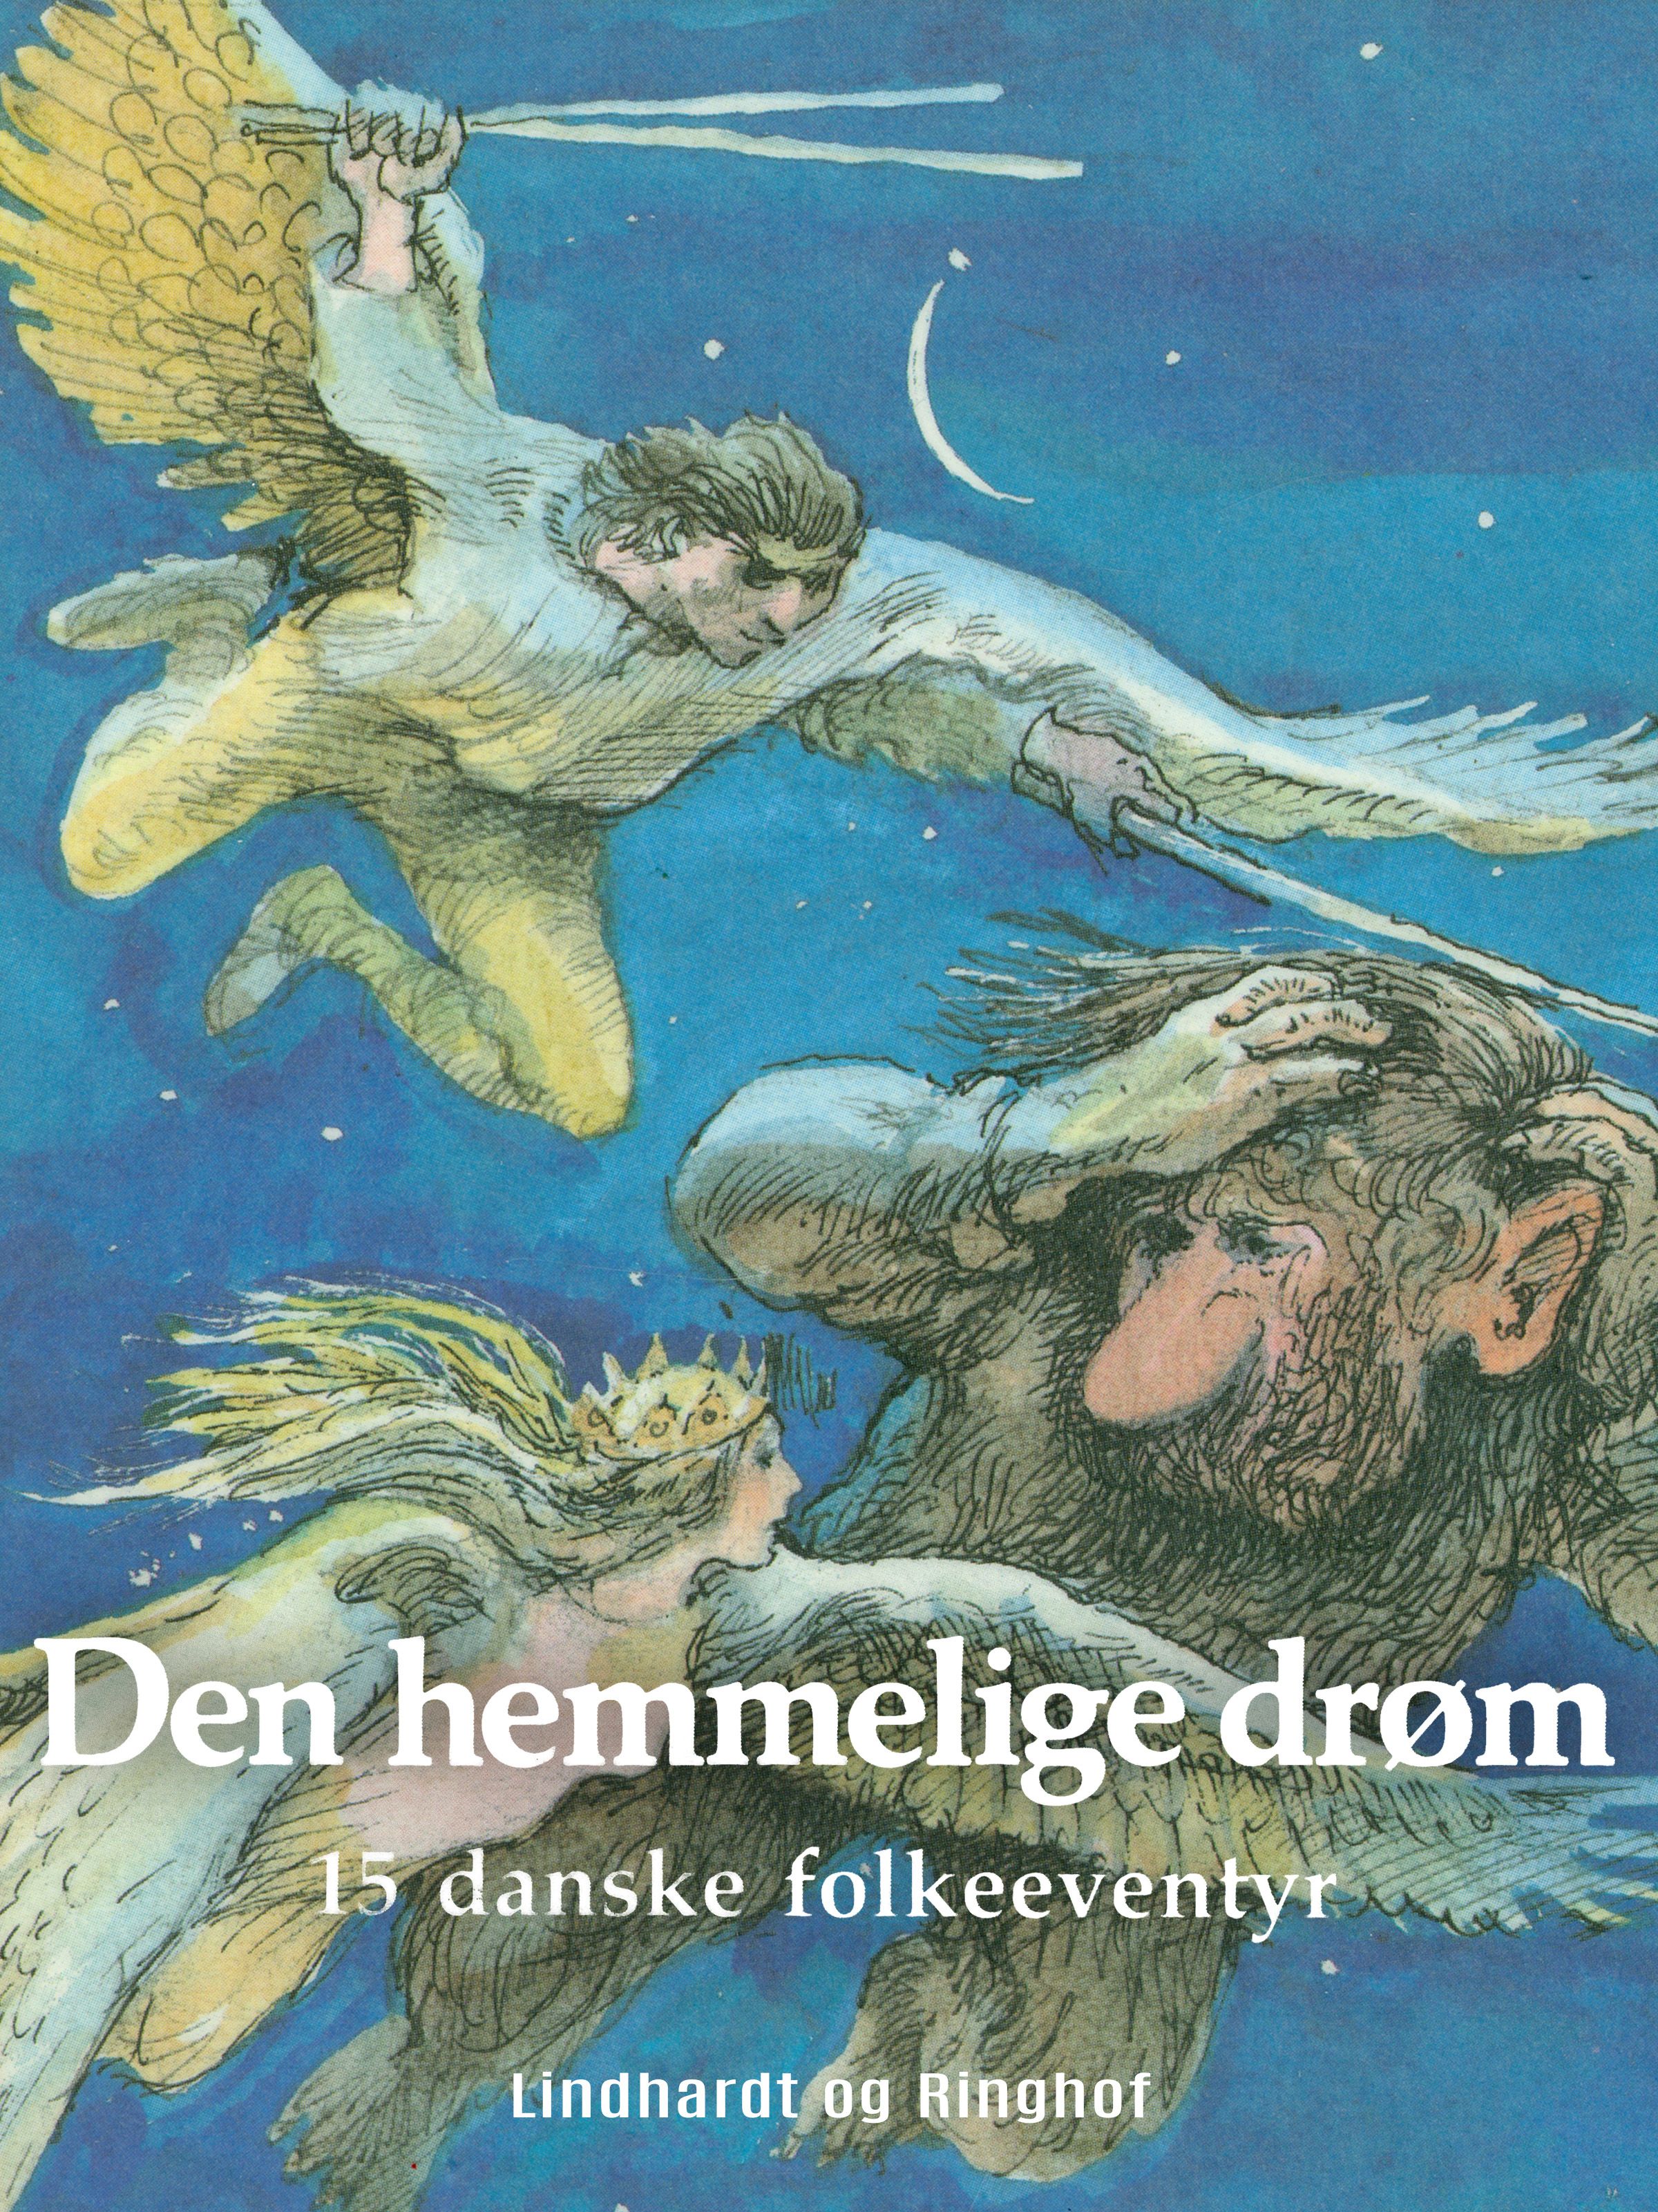 Den hemmelige drøm, e-bok av Søren Christensen